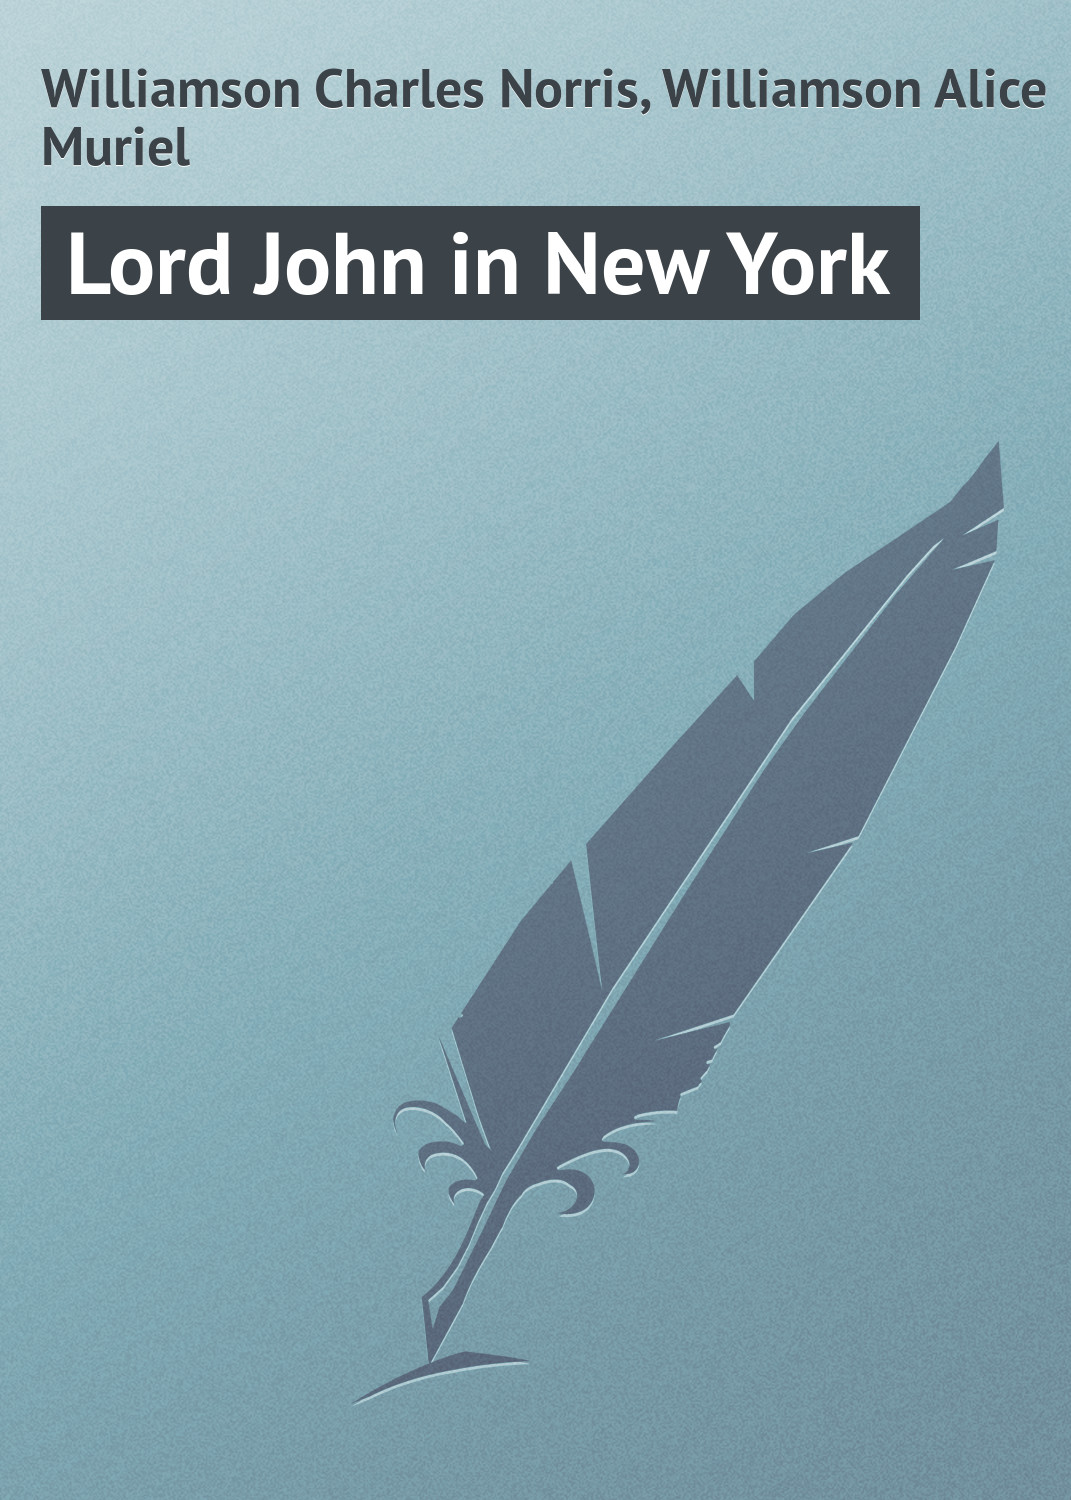 Книга Lord John in New York из серии , созданная Charles Williamson, Alice Williamson, может относится к жанру Классические детективы, Зарубежные детективы, Зарубежная классика. Стоимость электронной книги Lord John in New York с идентификатором 23163635 составляет 5.99 руб.